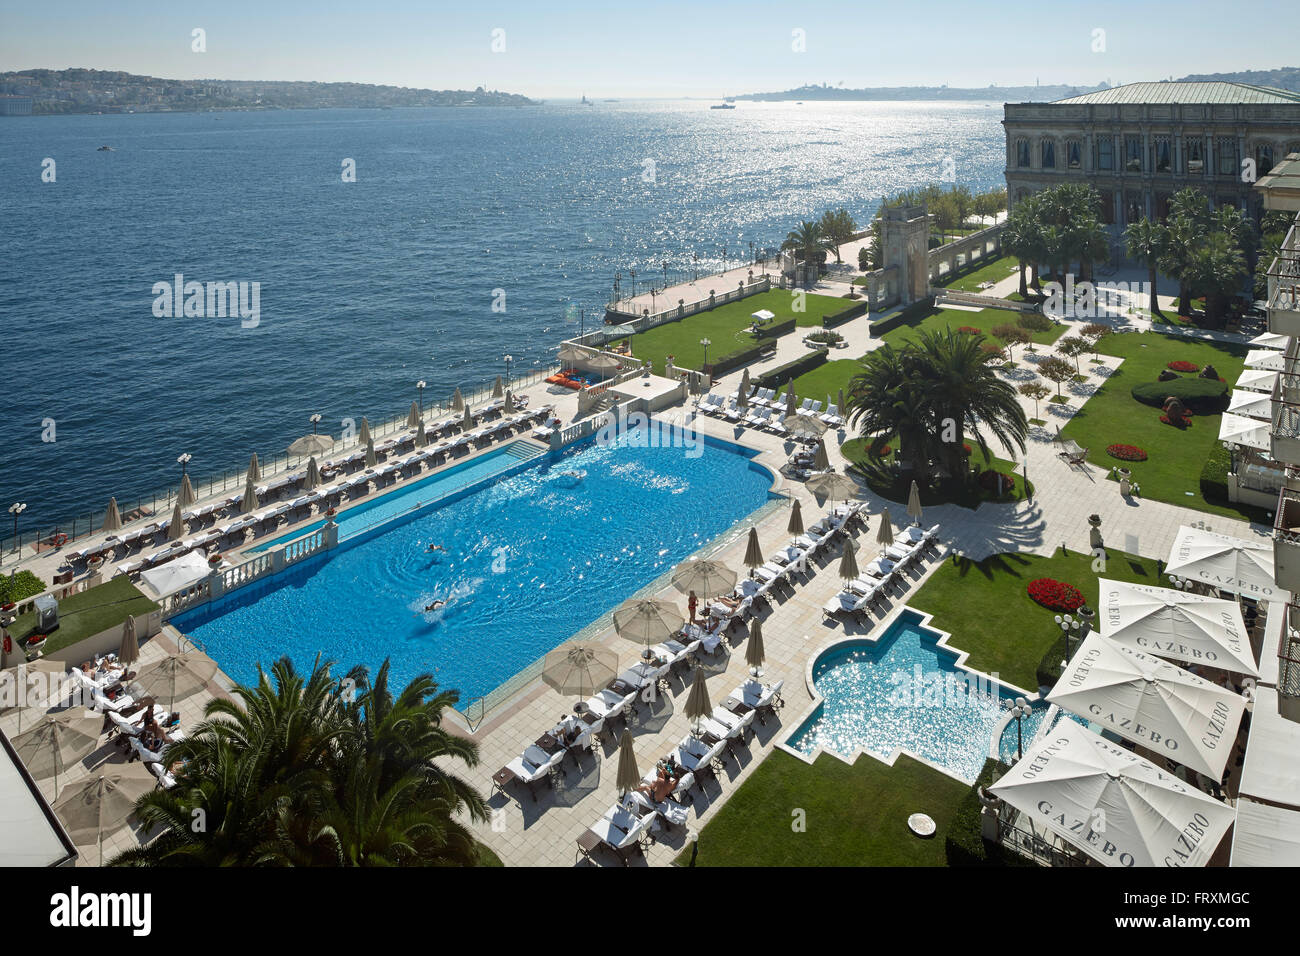 Vue sur un complexe hôtel avec piscine dans le Bosphore, le Ciragan Palace, Istanbul, Turquie Banque D'Images